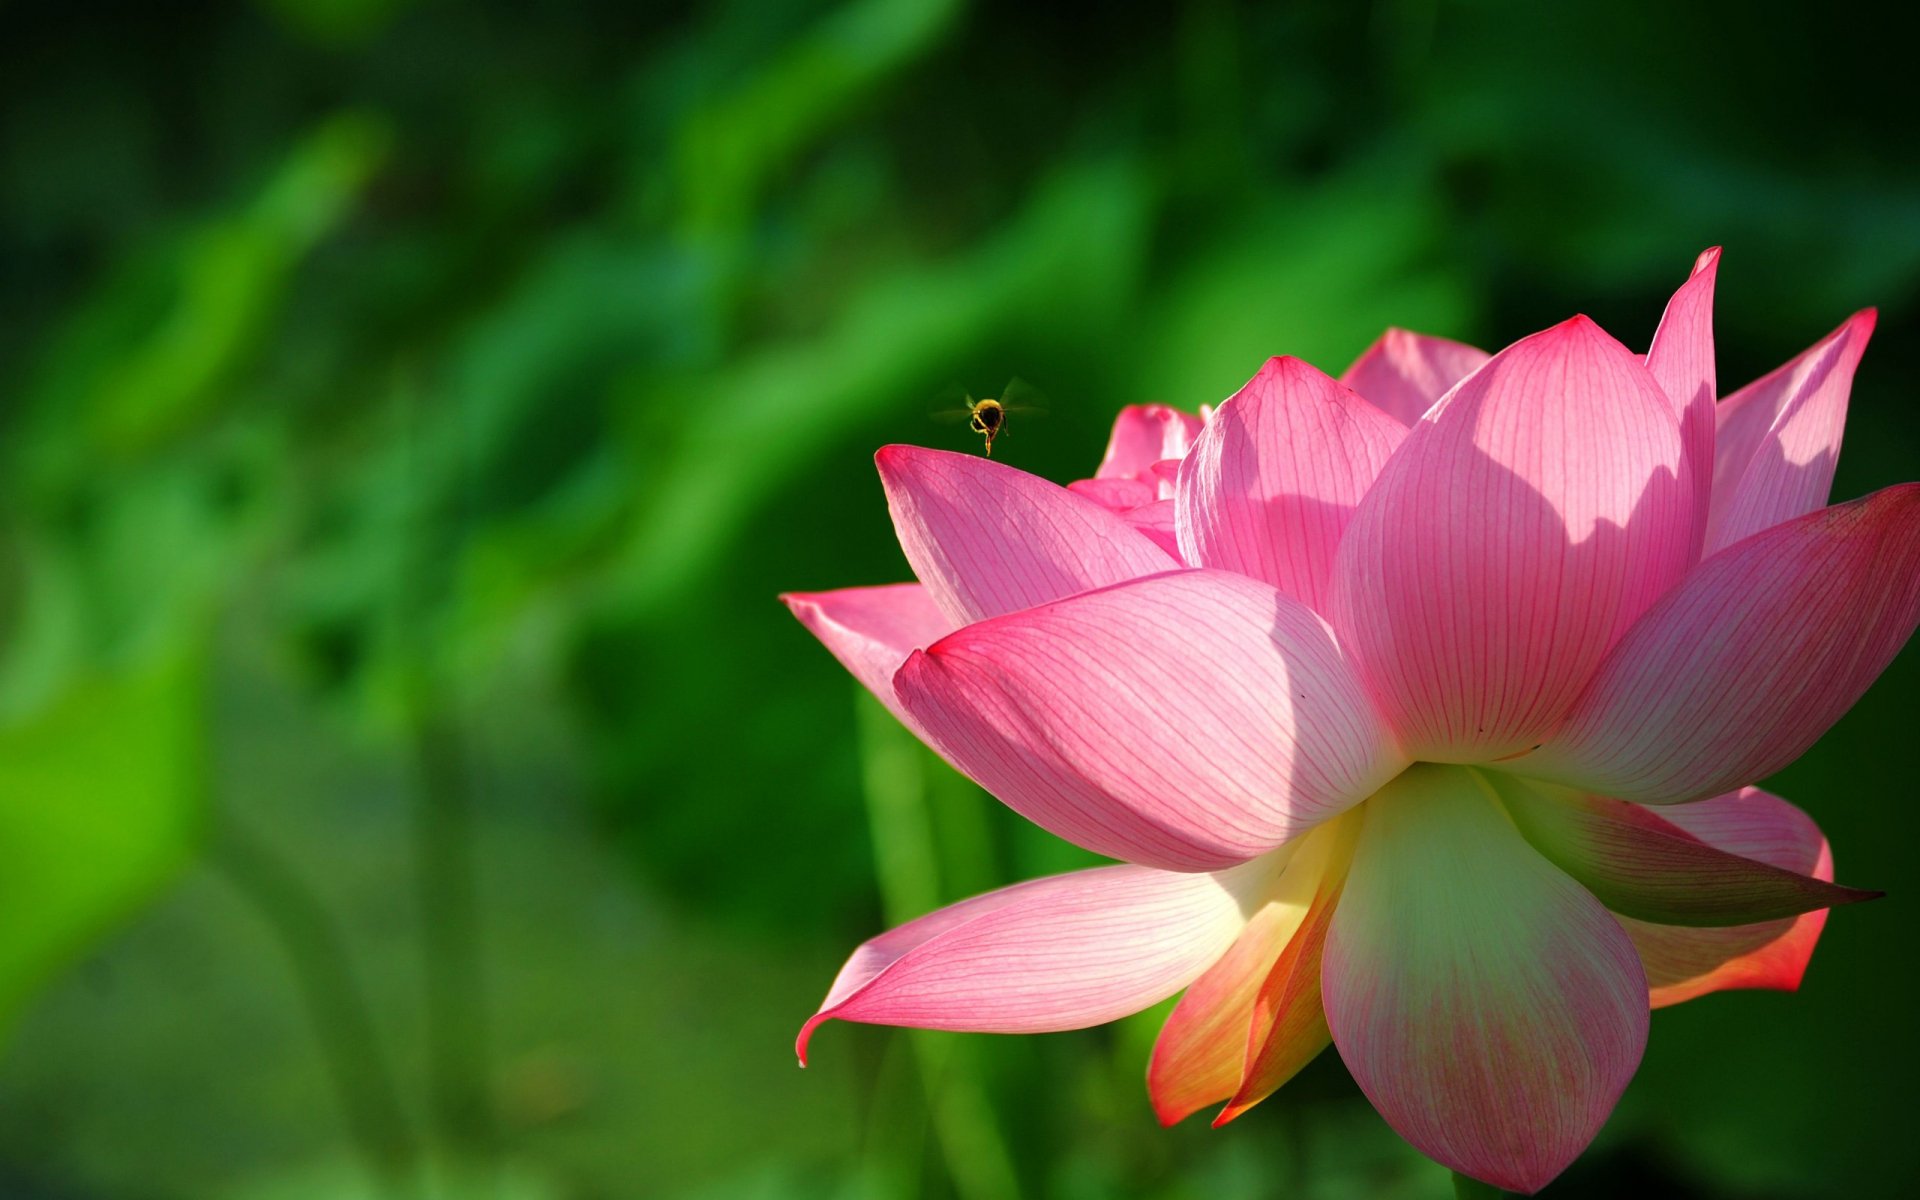 Lotus HD wallpaper - Với Lotus HD wallpaper, bạn sẽ được tận hưởng toàn bộ vẻ đẹp của hoa sen ngay trên thiết bị của mình. Độ phân giải cao mang đến sự rõ nét và sống động cho mọi chi tiết của hoa sen, giúp bạn có trải nghiệm thật sống động và đầy cảm xúc. 